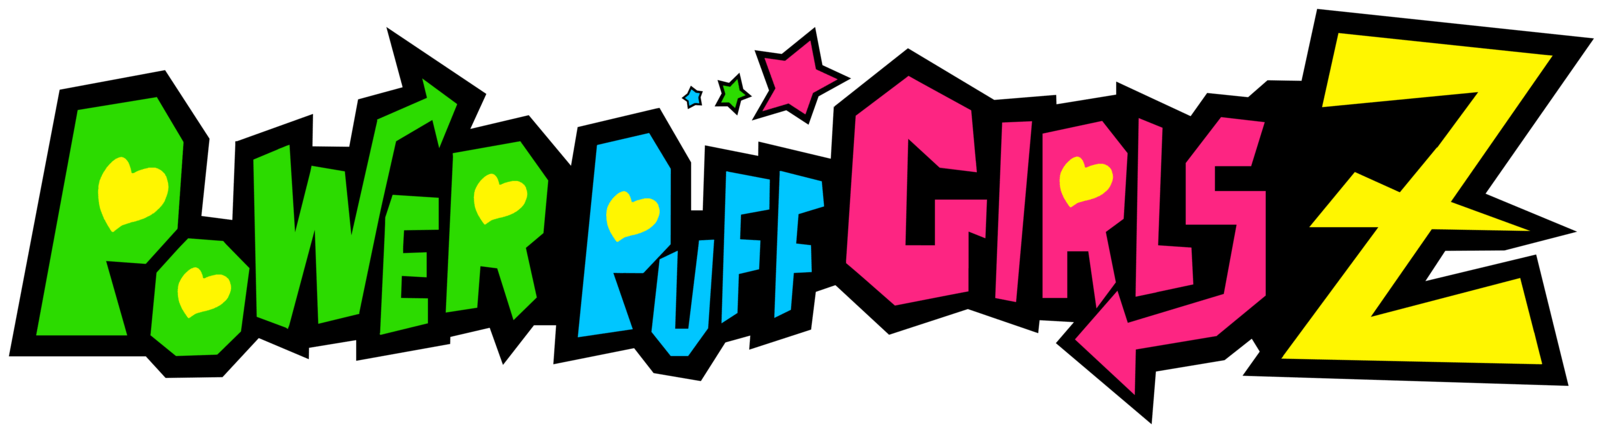 Power Girl Logo - Powerpuff Girls Z | Logopedia | FANDOM powered by Wikia